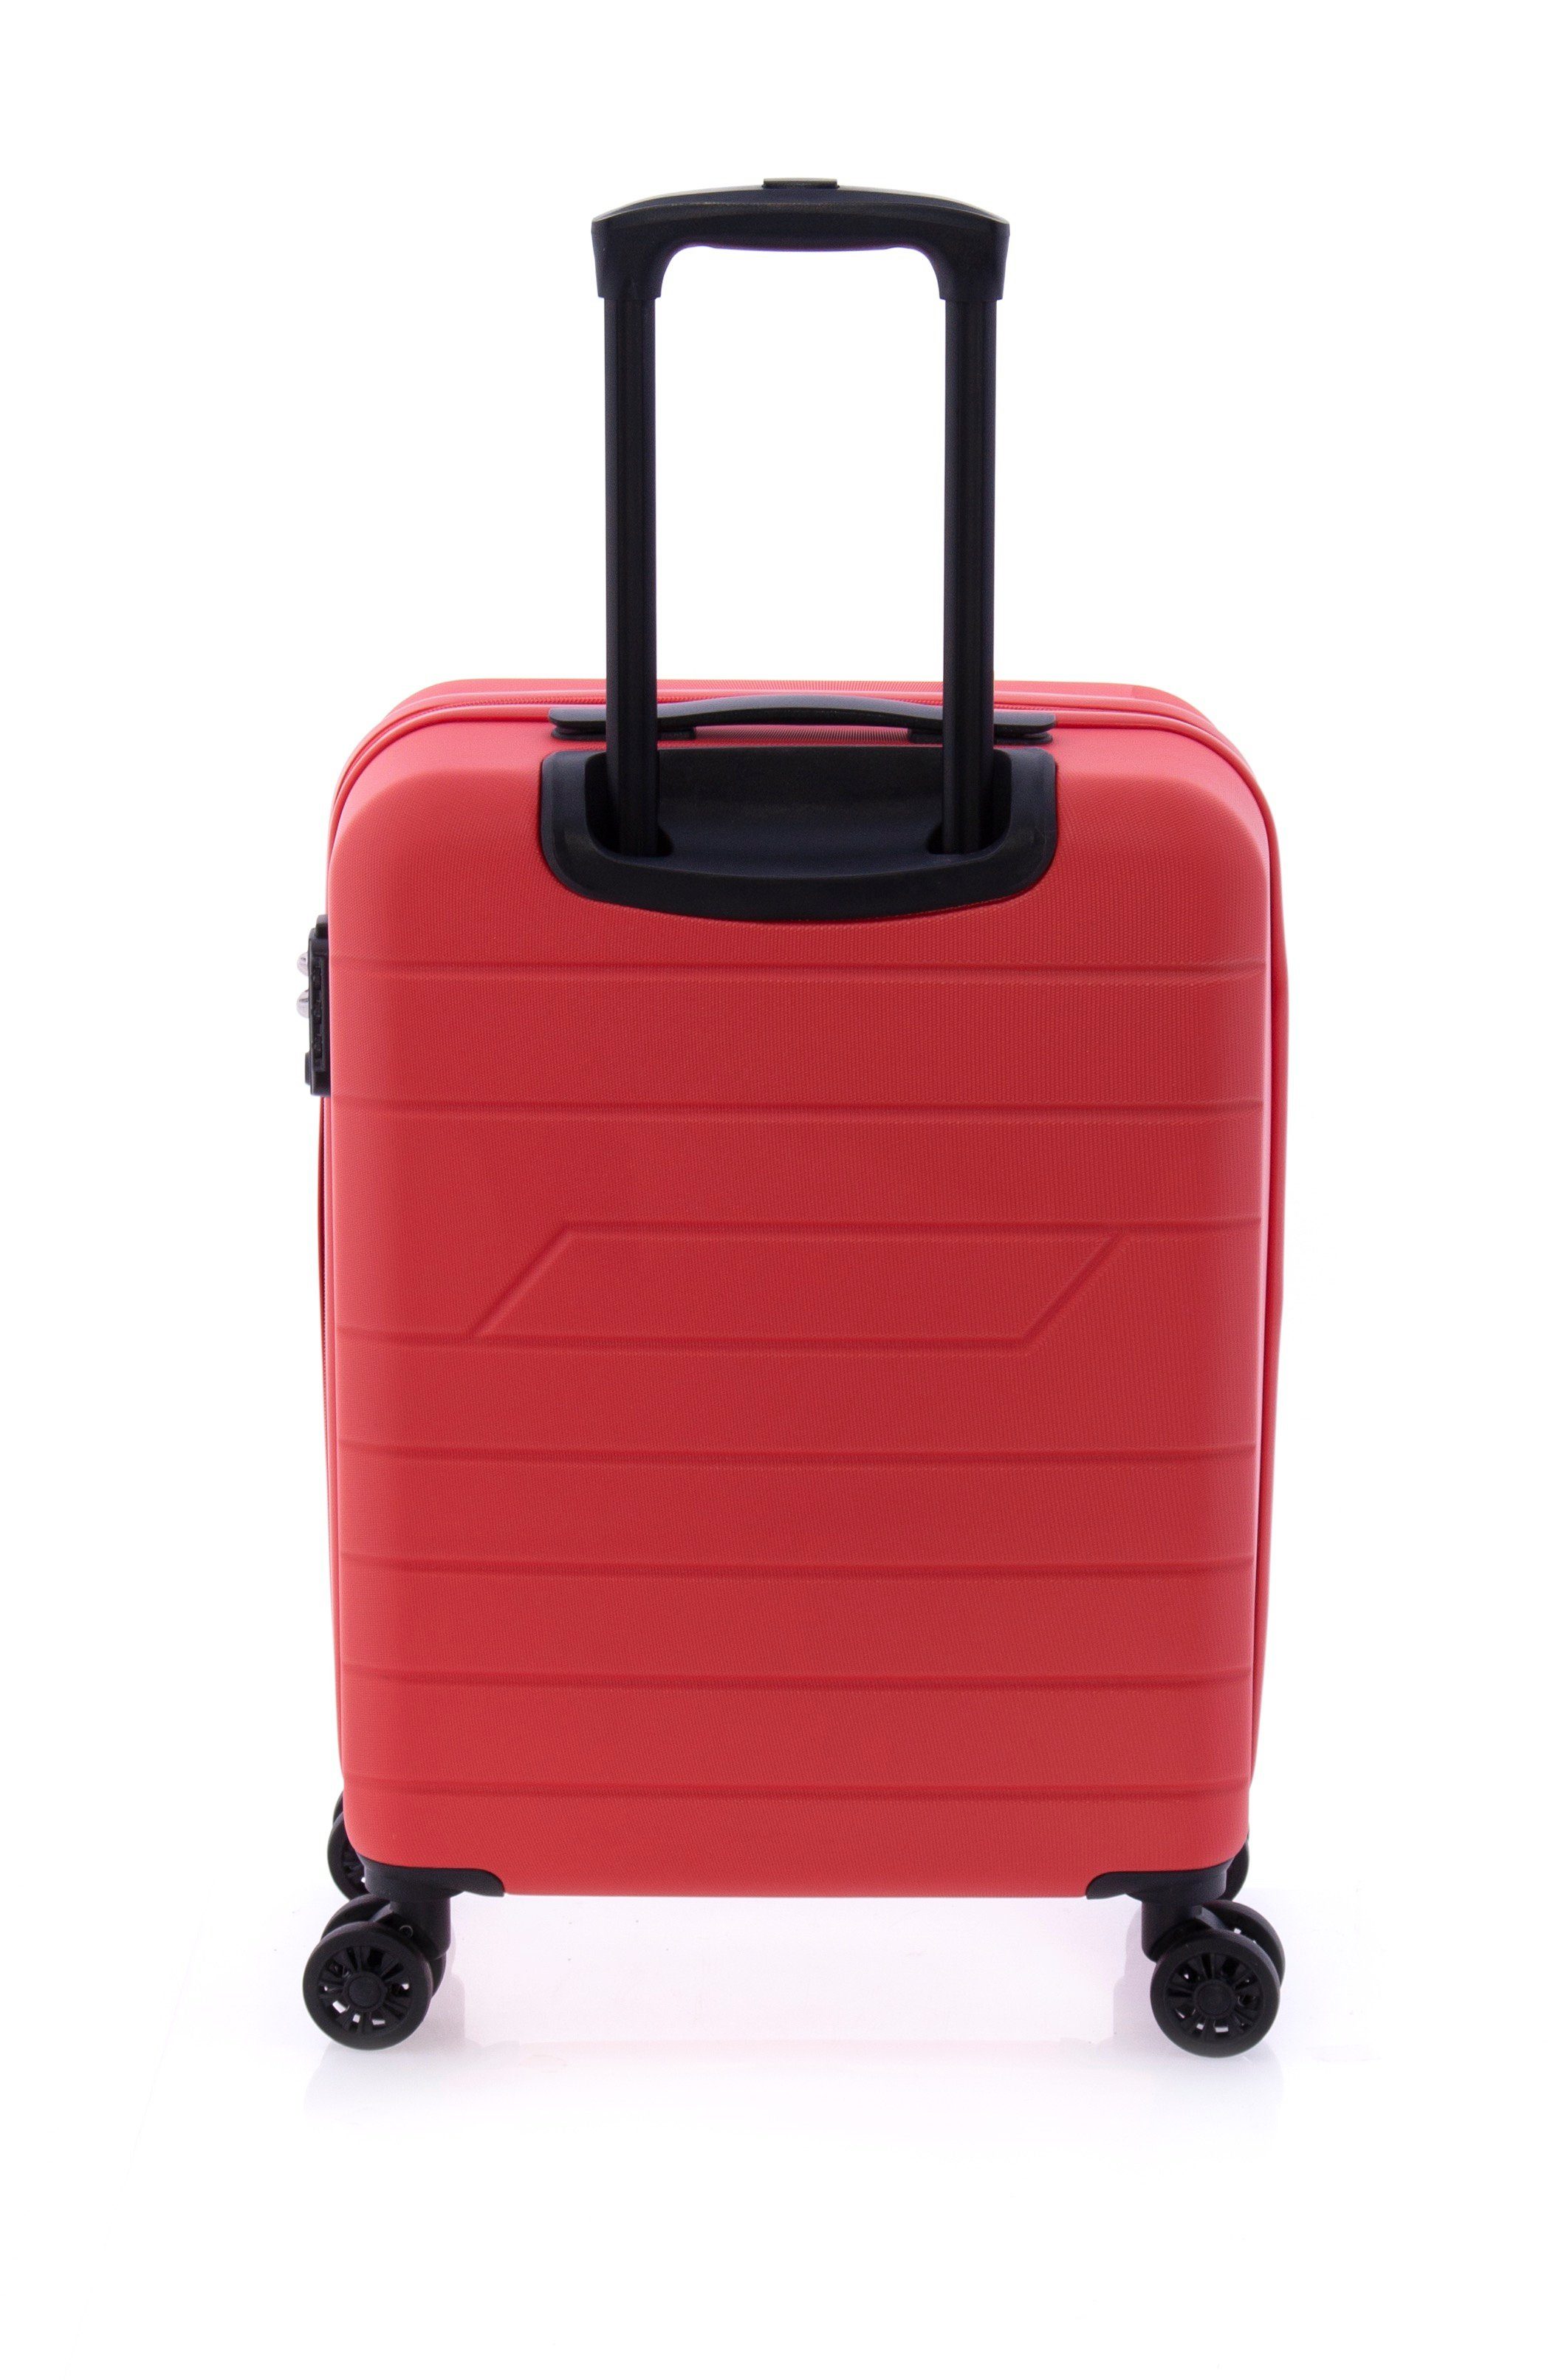 GLADIATOR Handgepäck-Trolley Koffer - Volumen: rot, Farben: Dehnfalte, Liter, 36/40 4 TSA-Schloss, blau, 55 gelb schwarz, minzgrün, cm, Rollen, hellblau